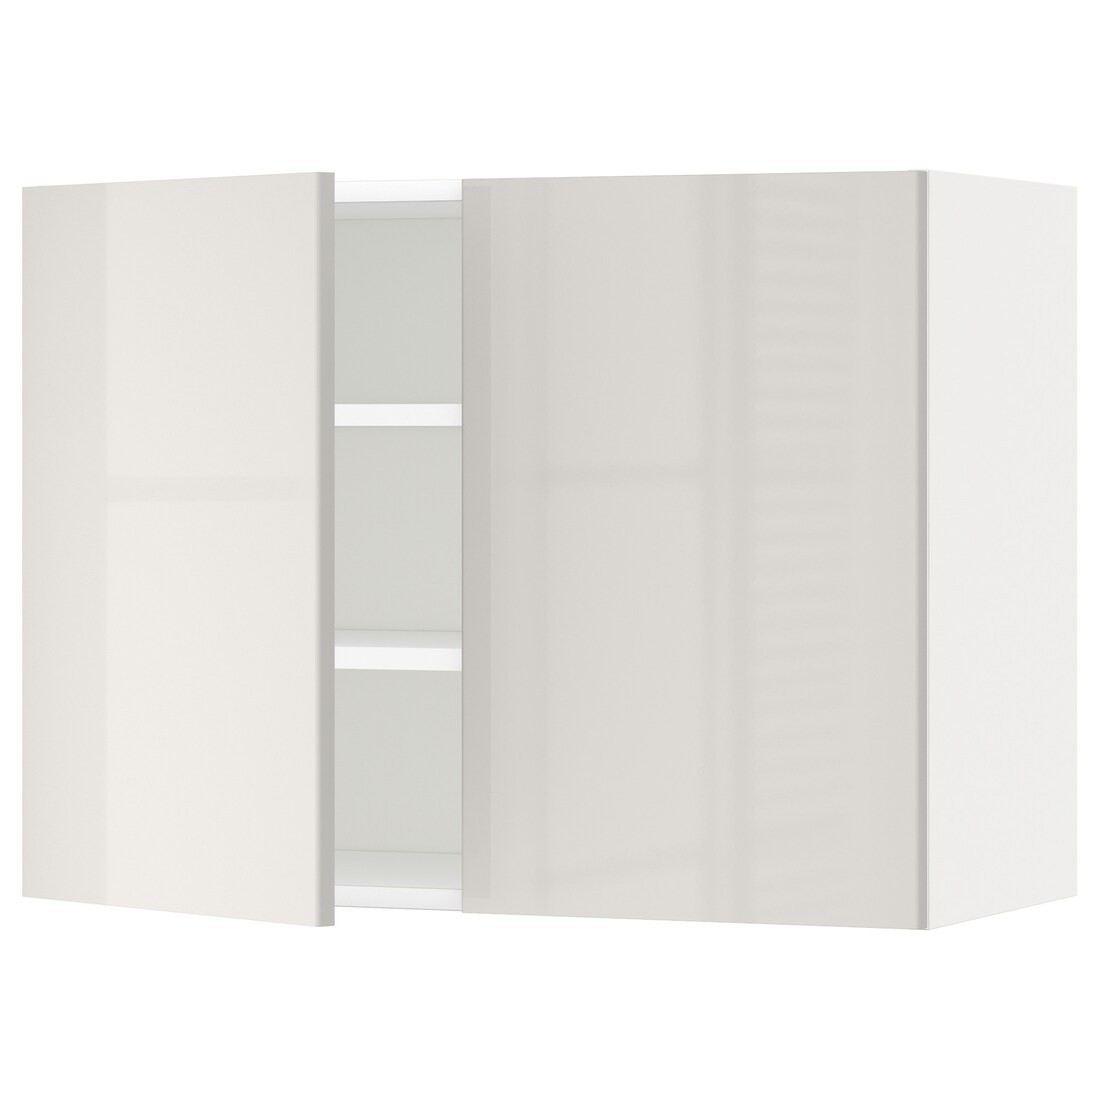 METOD МЕТОД Навісна шафа з полицями / 2 дверцят, білий / Ringhult світло-сірий, 80x60 см